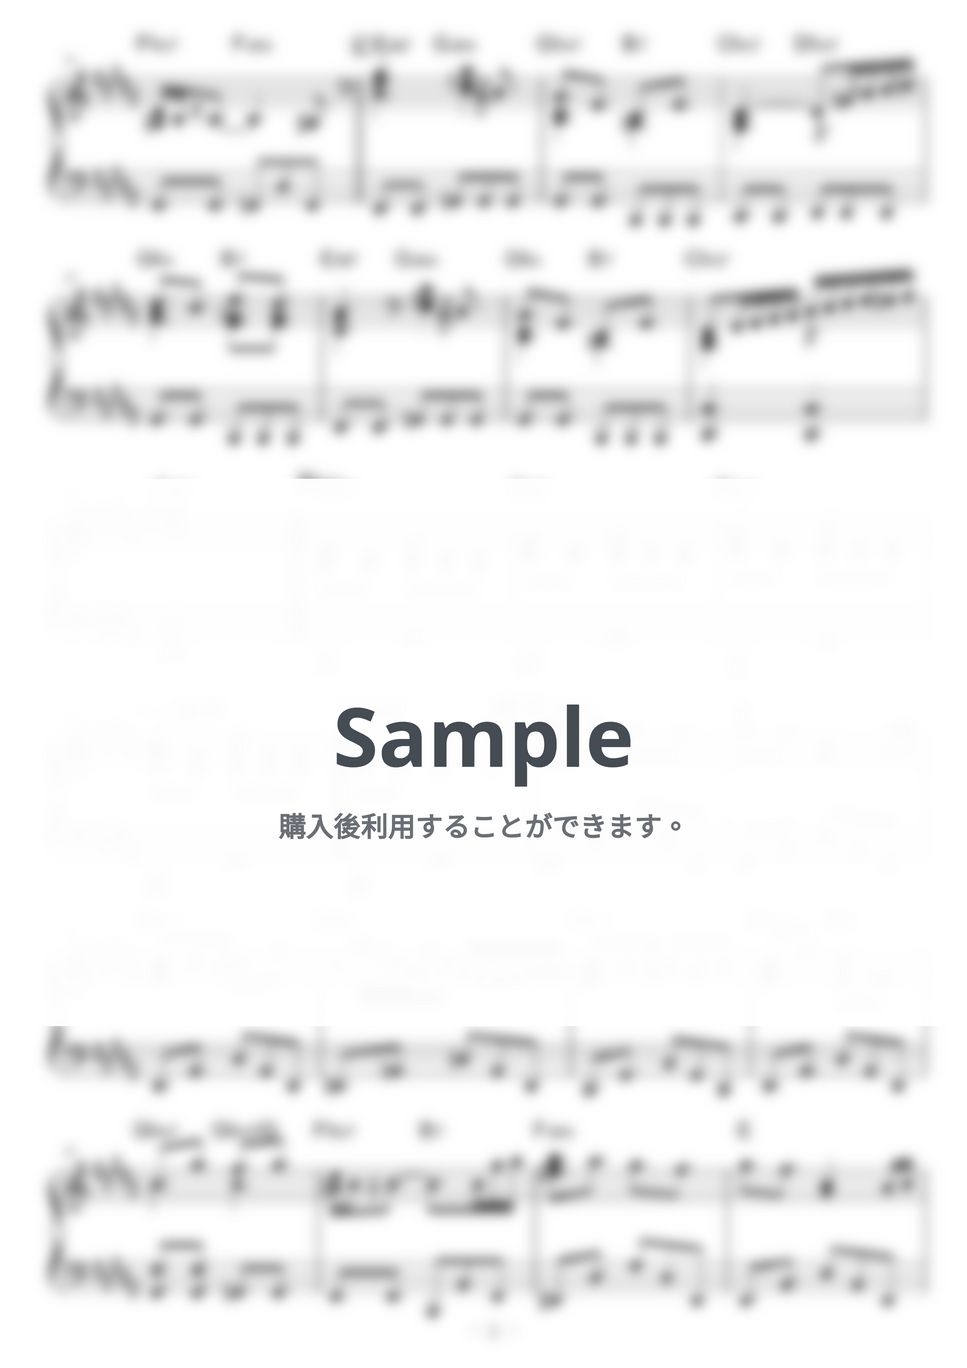 bohemianvoodoo - Magnolia by piano*score